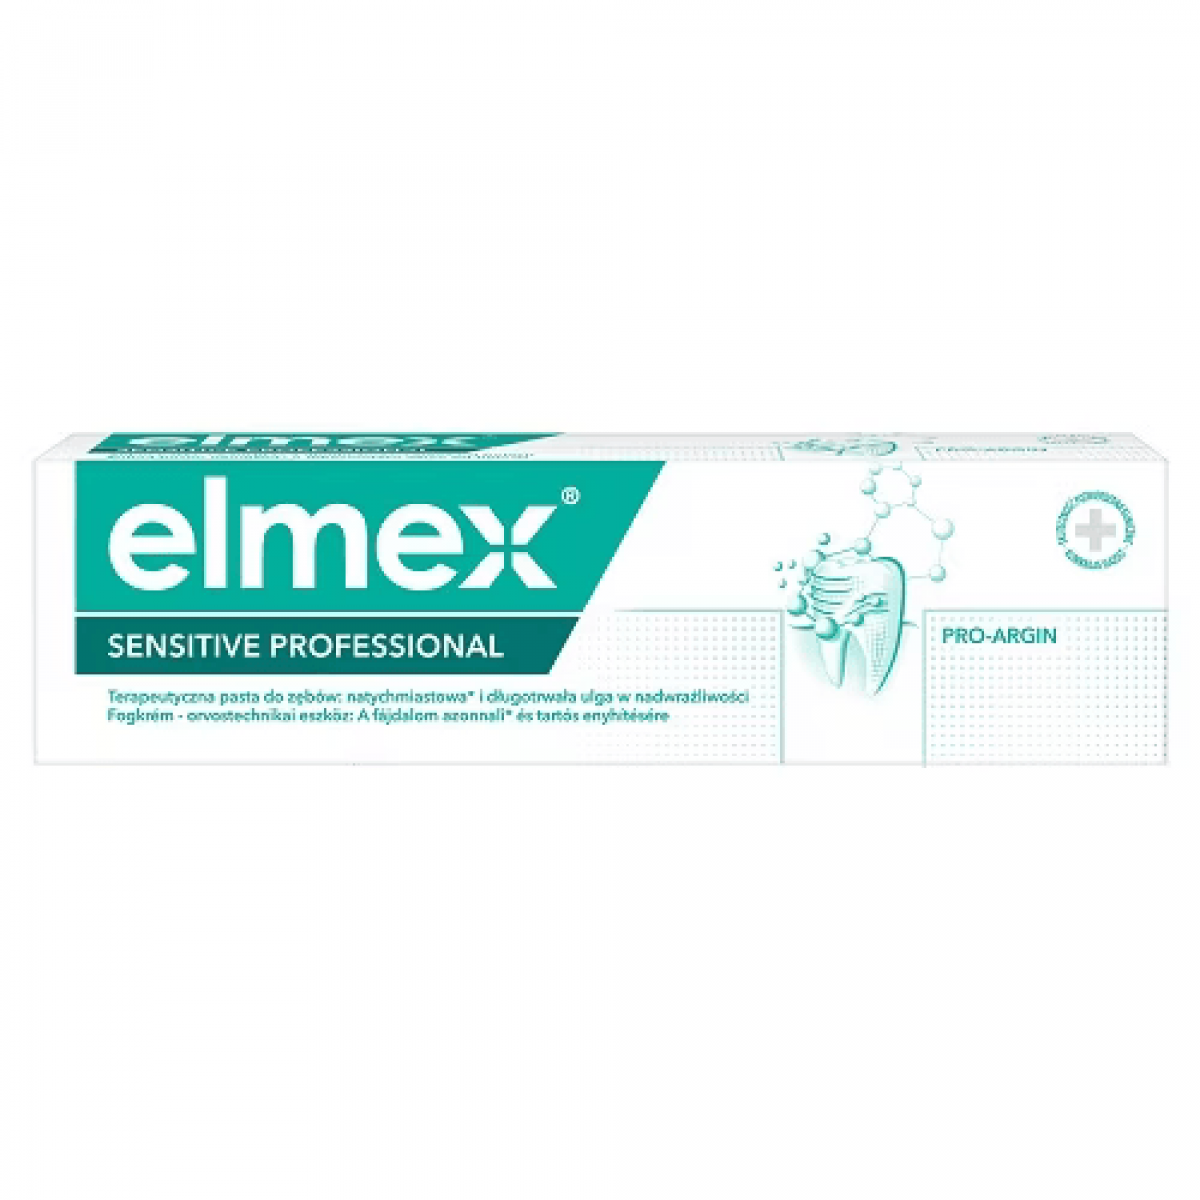 Зубная паста COLGATE (Колгейт) Elmex (Элмекс) Защита от кариеса 75 мл